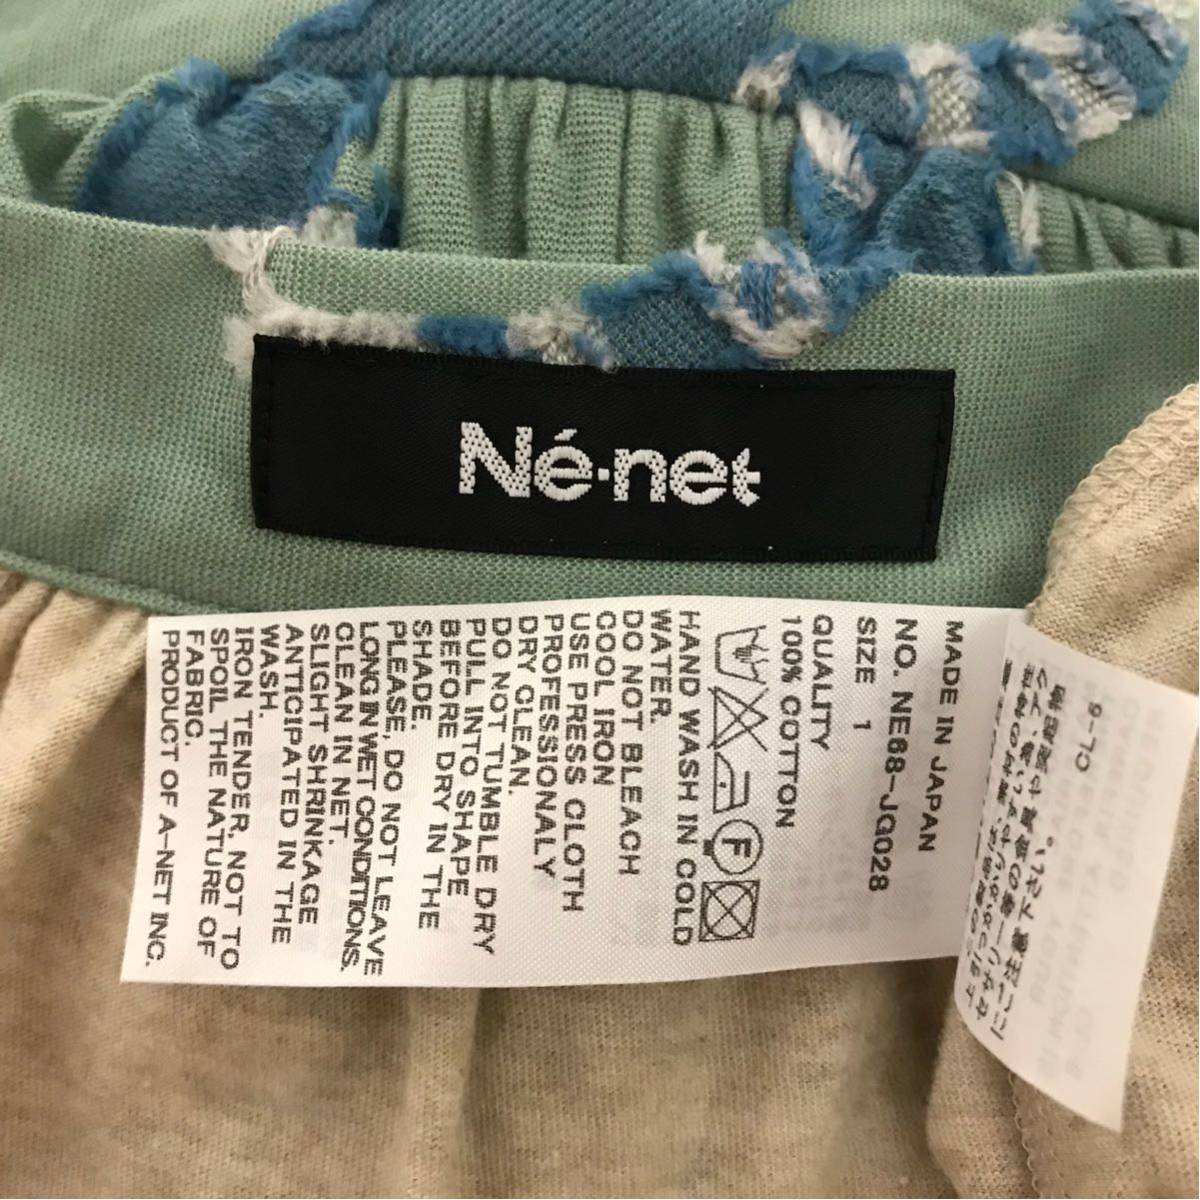 新品★Ne-net スカート ネ・ネット綿 日本製レディース 早い者勝ち 激安 素敵 ブランド 上品 可愛い 処分品 セール タグ付き おしゃれ